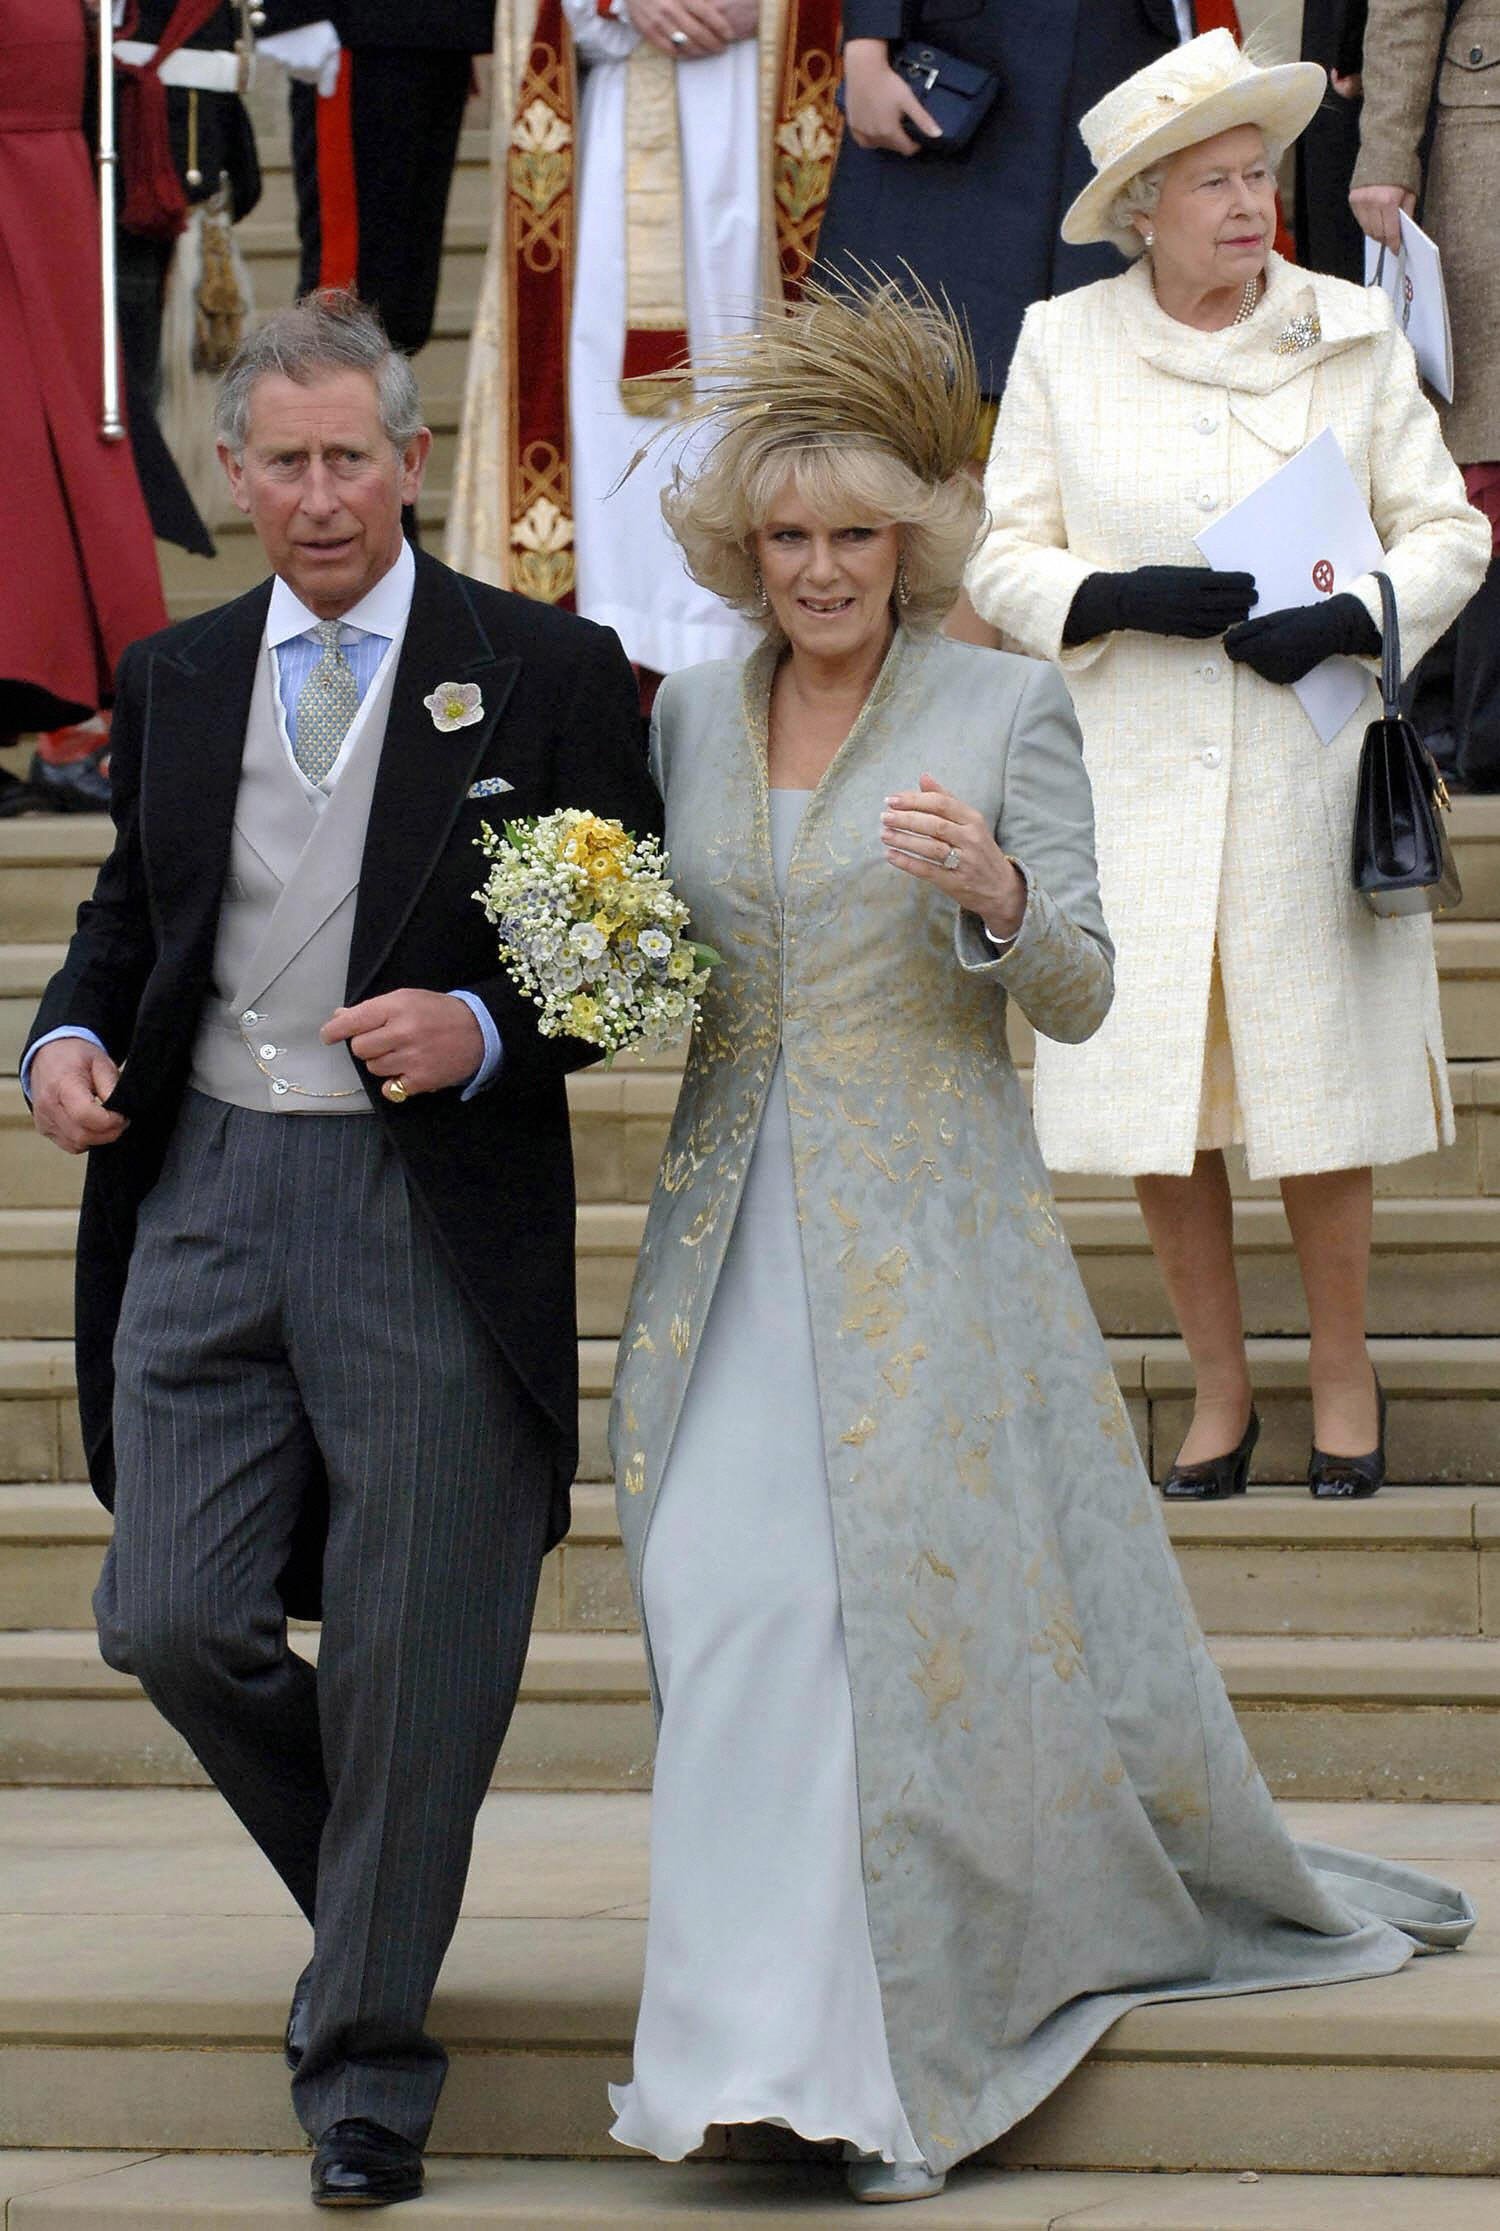 Königin Elizabeth II. abgebildet hinter Prinz Charles und seiner Frau Camilla, Herzogin of Cornwall, die nach der kirchlichen Segnung ihrer standesamtlichen Trauung am 9. April 2005 die Stufen der St. George's Chapel in Windsor hinuntergehen | Quelle: Getty Images